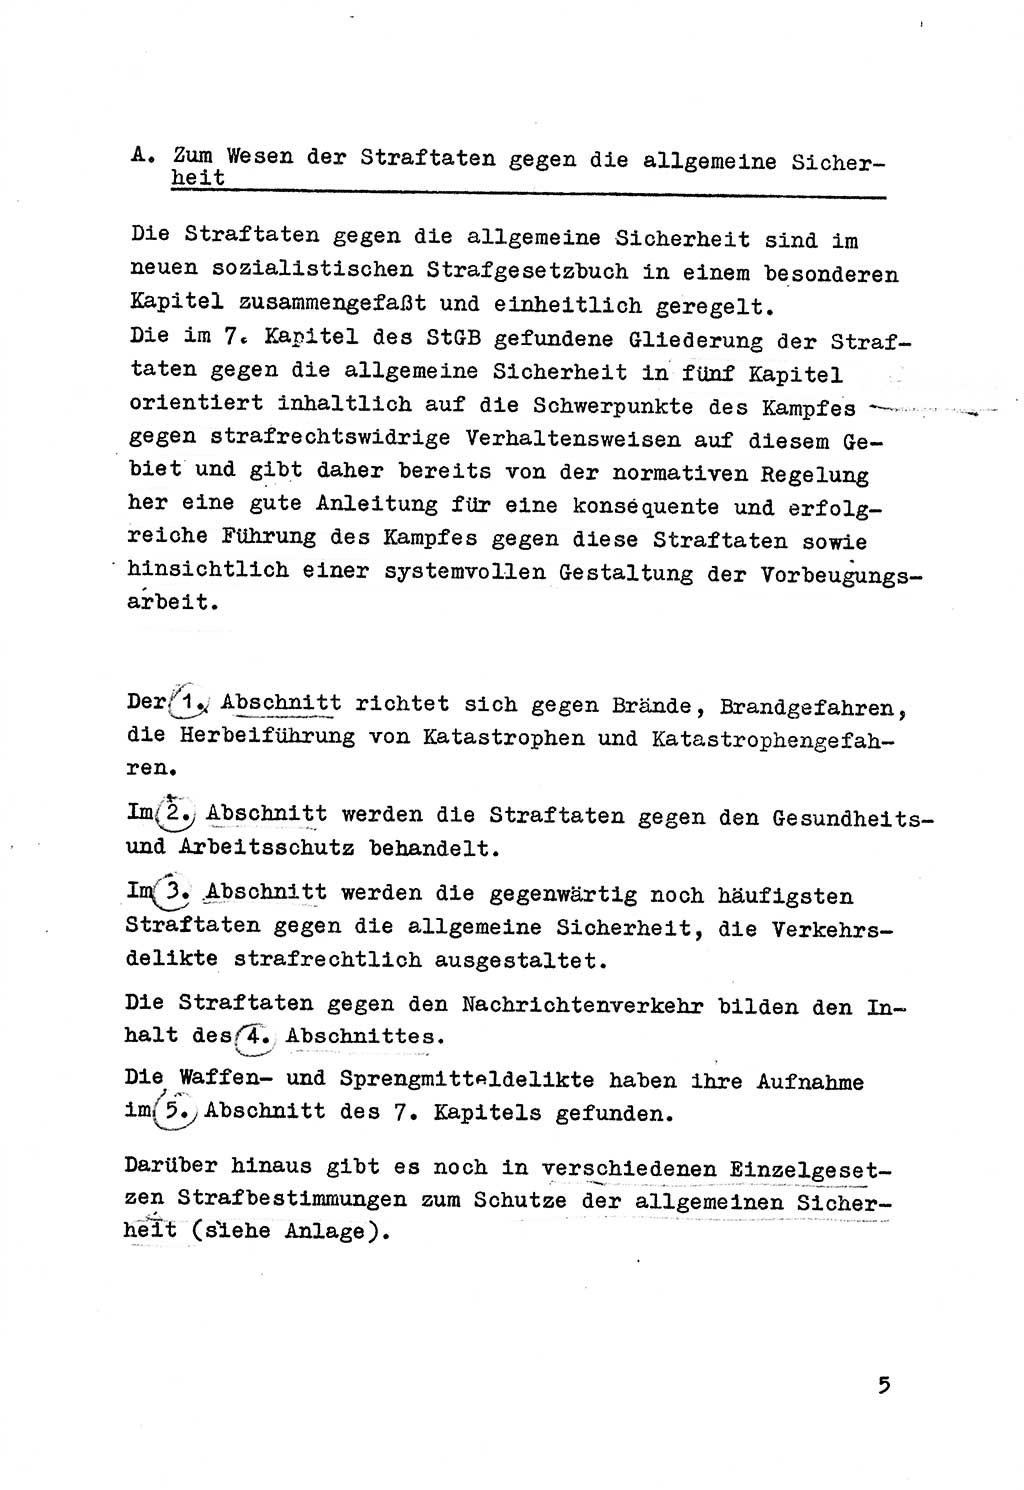 Strafrecht der DDR (Deutsche Demokratische Republik), Besonderer Teil, Lehrmaterial, Heft 7 1970, Seite 5 (Strafr. DDR BT Lehrmat. H. 7 1970, S. 5)